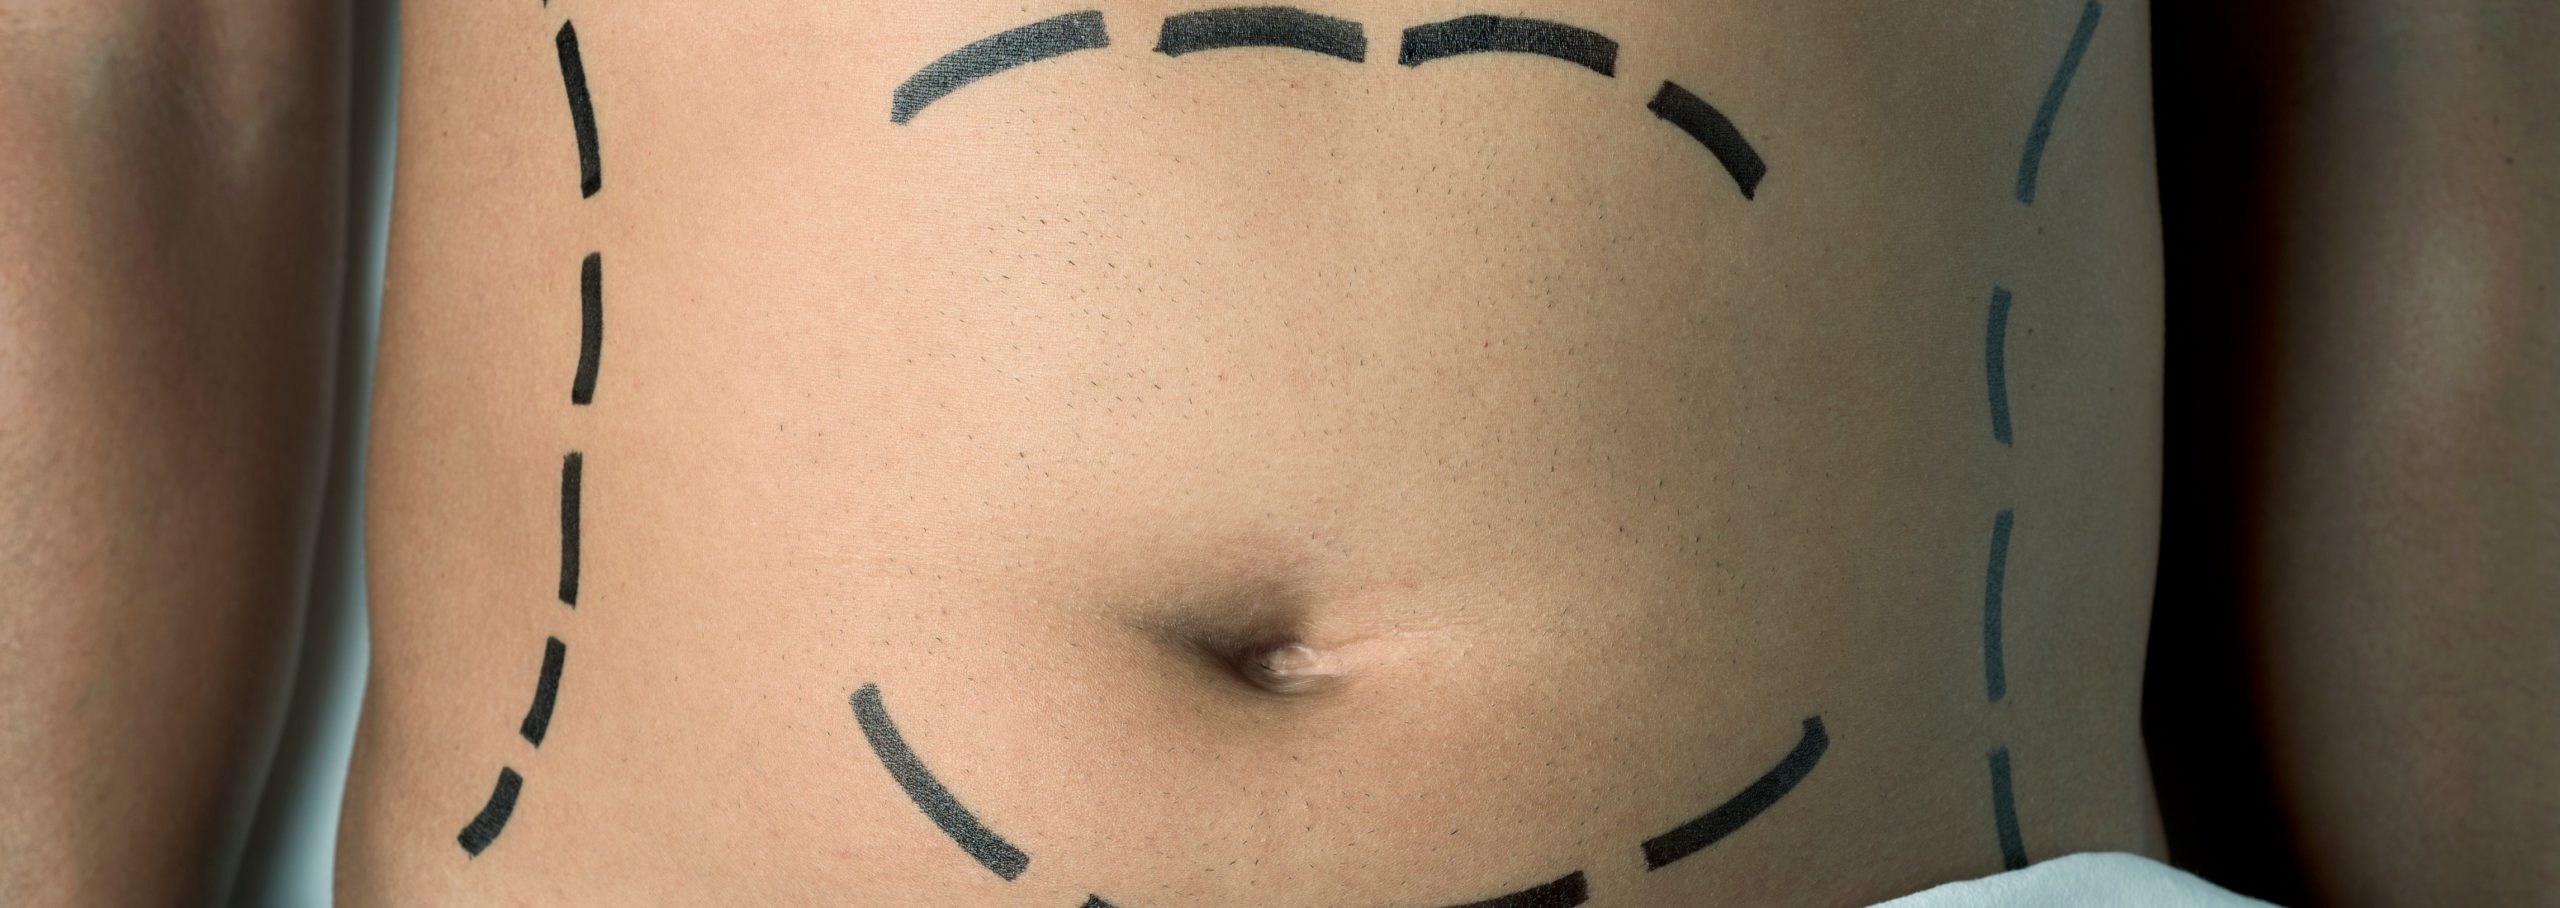 Cicatriz abdominoplastia: Cuidados, tratamientos y consejos • Portal de  salud